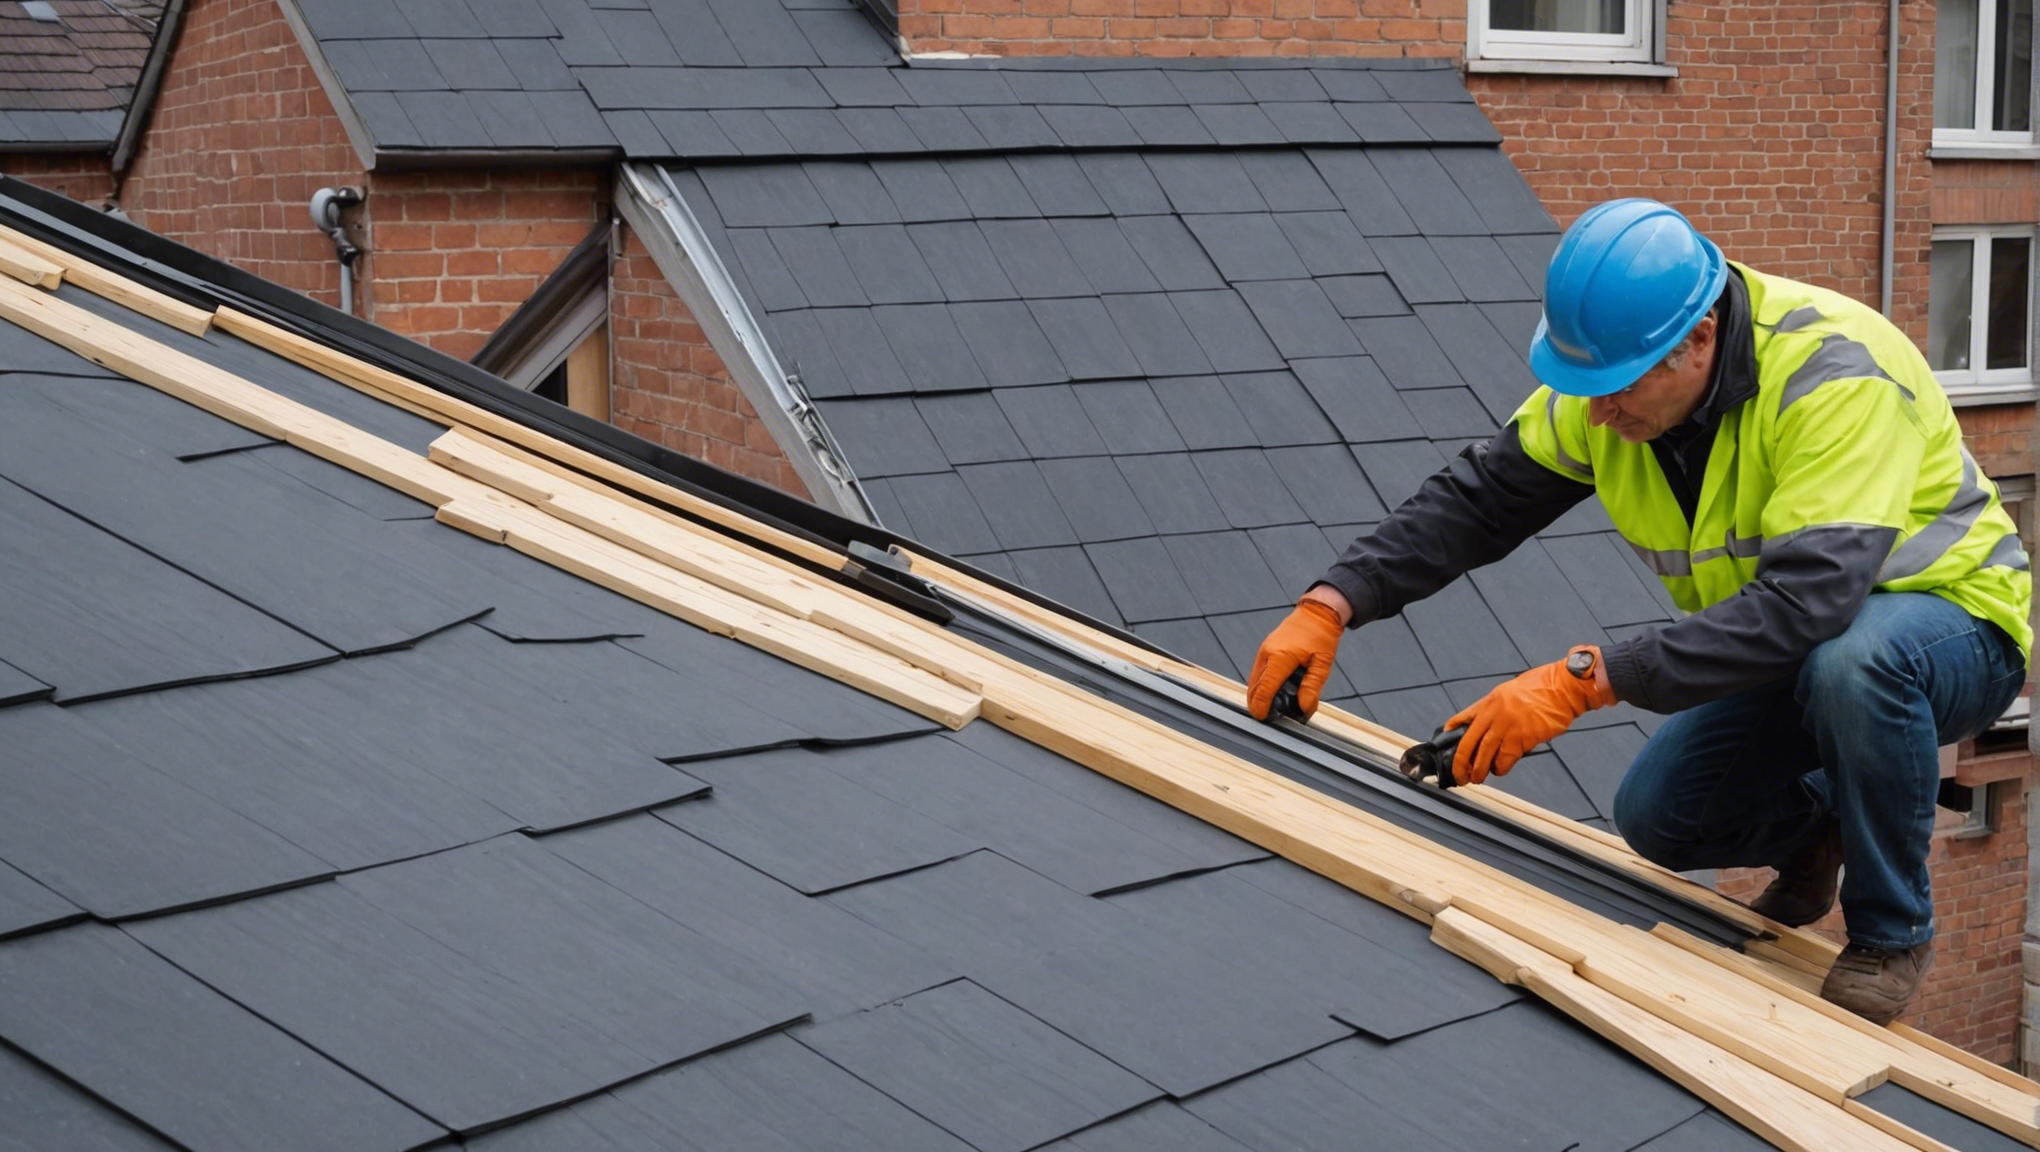 découvrez comment obtenir une aide financière pour la rénovation de votre toiture et améliorer l'efficacité énergétique de votre habitation.